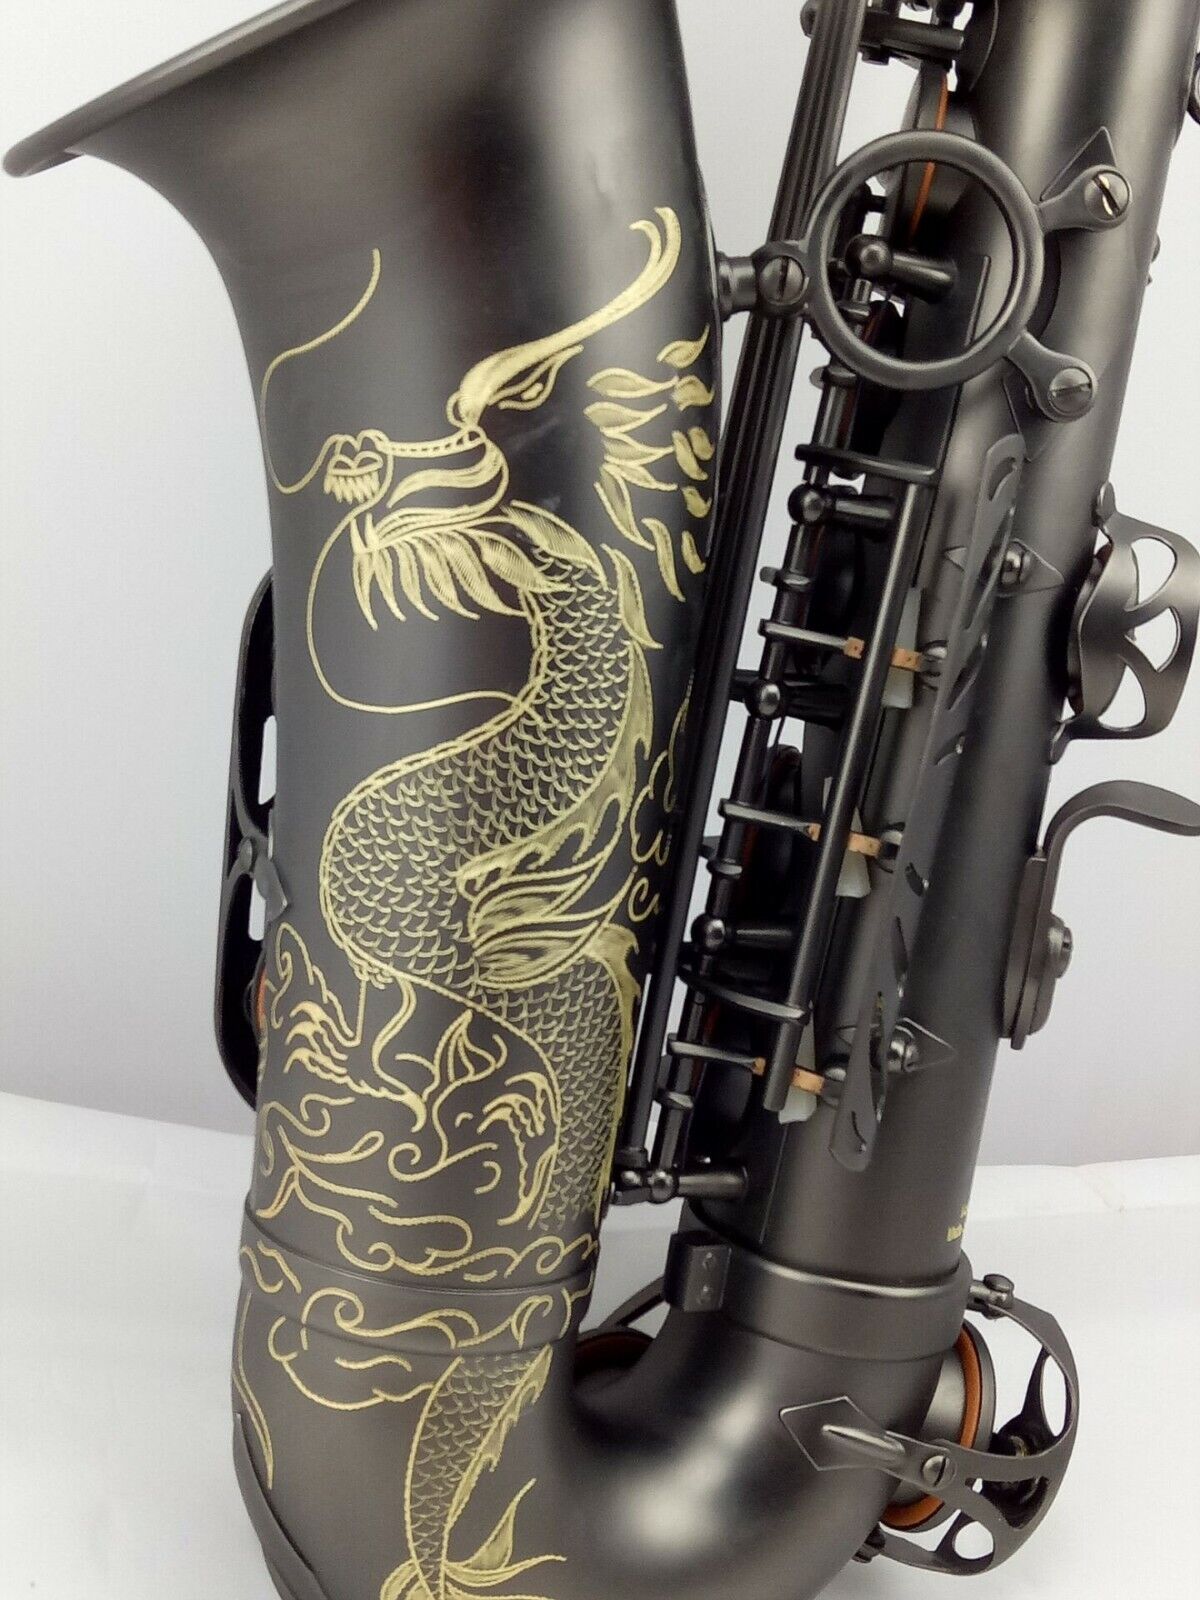 Альт-саксофон Eastern Music Professional матовый черный с гравировкой дракона